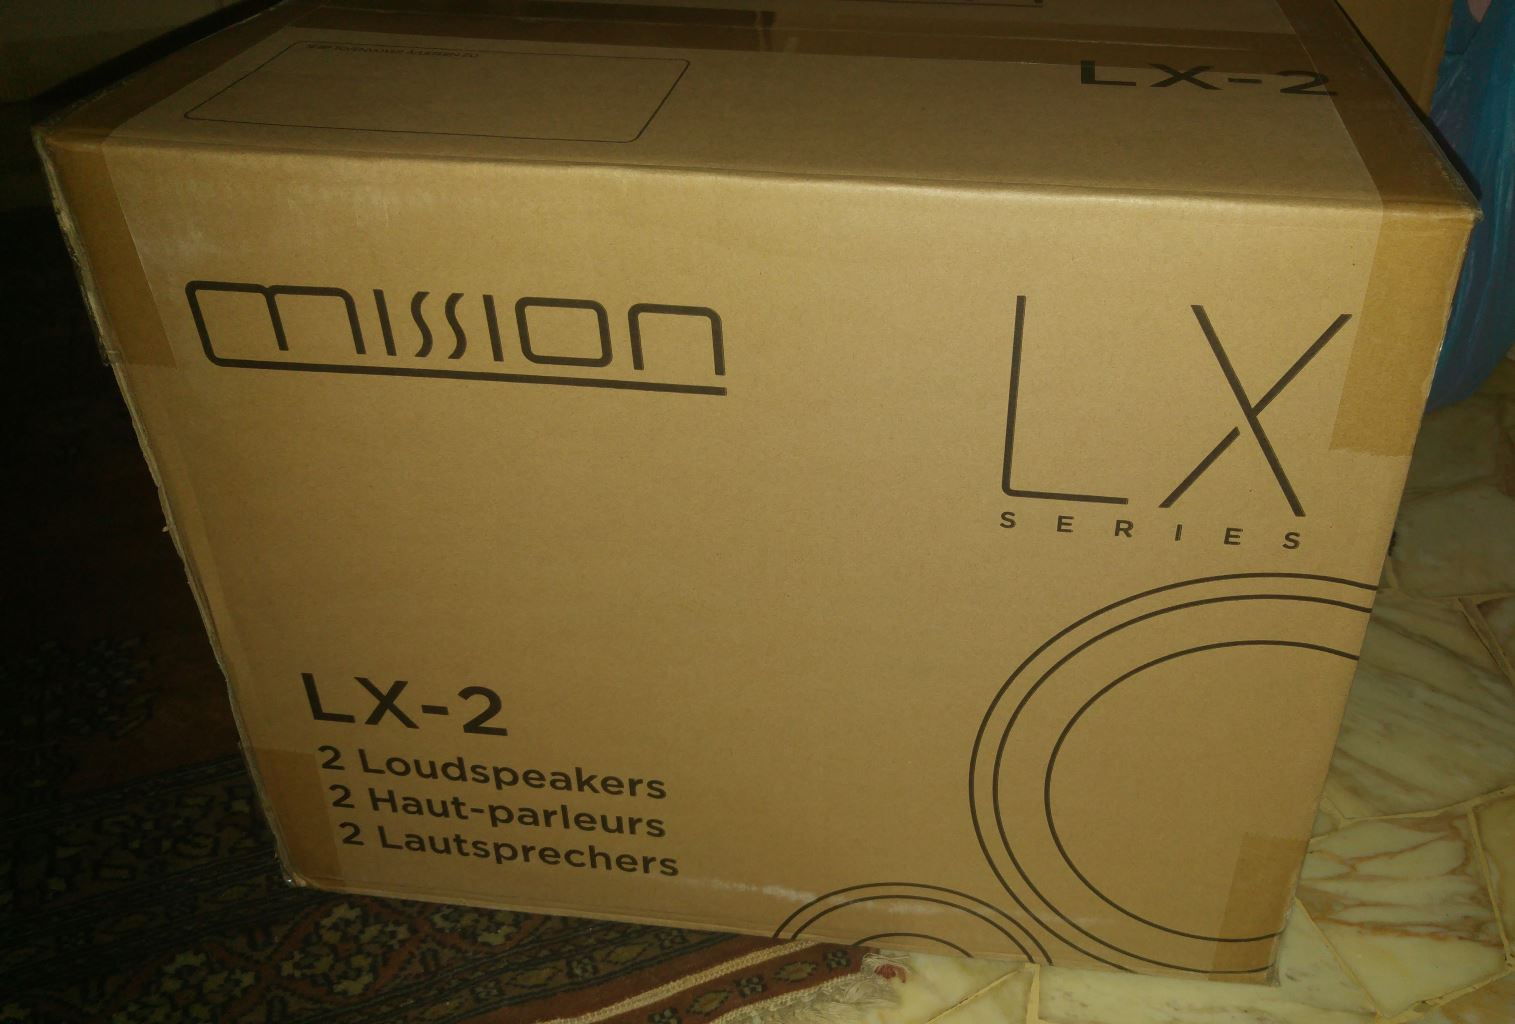 Le Mission LX-2 nella loro scatola